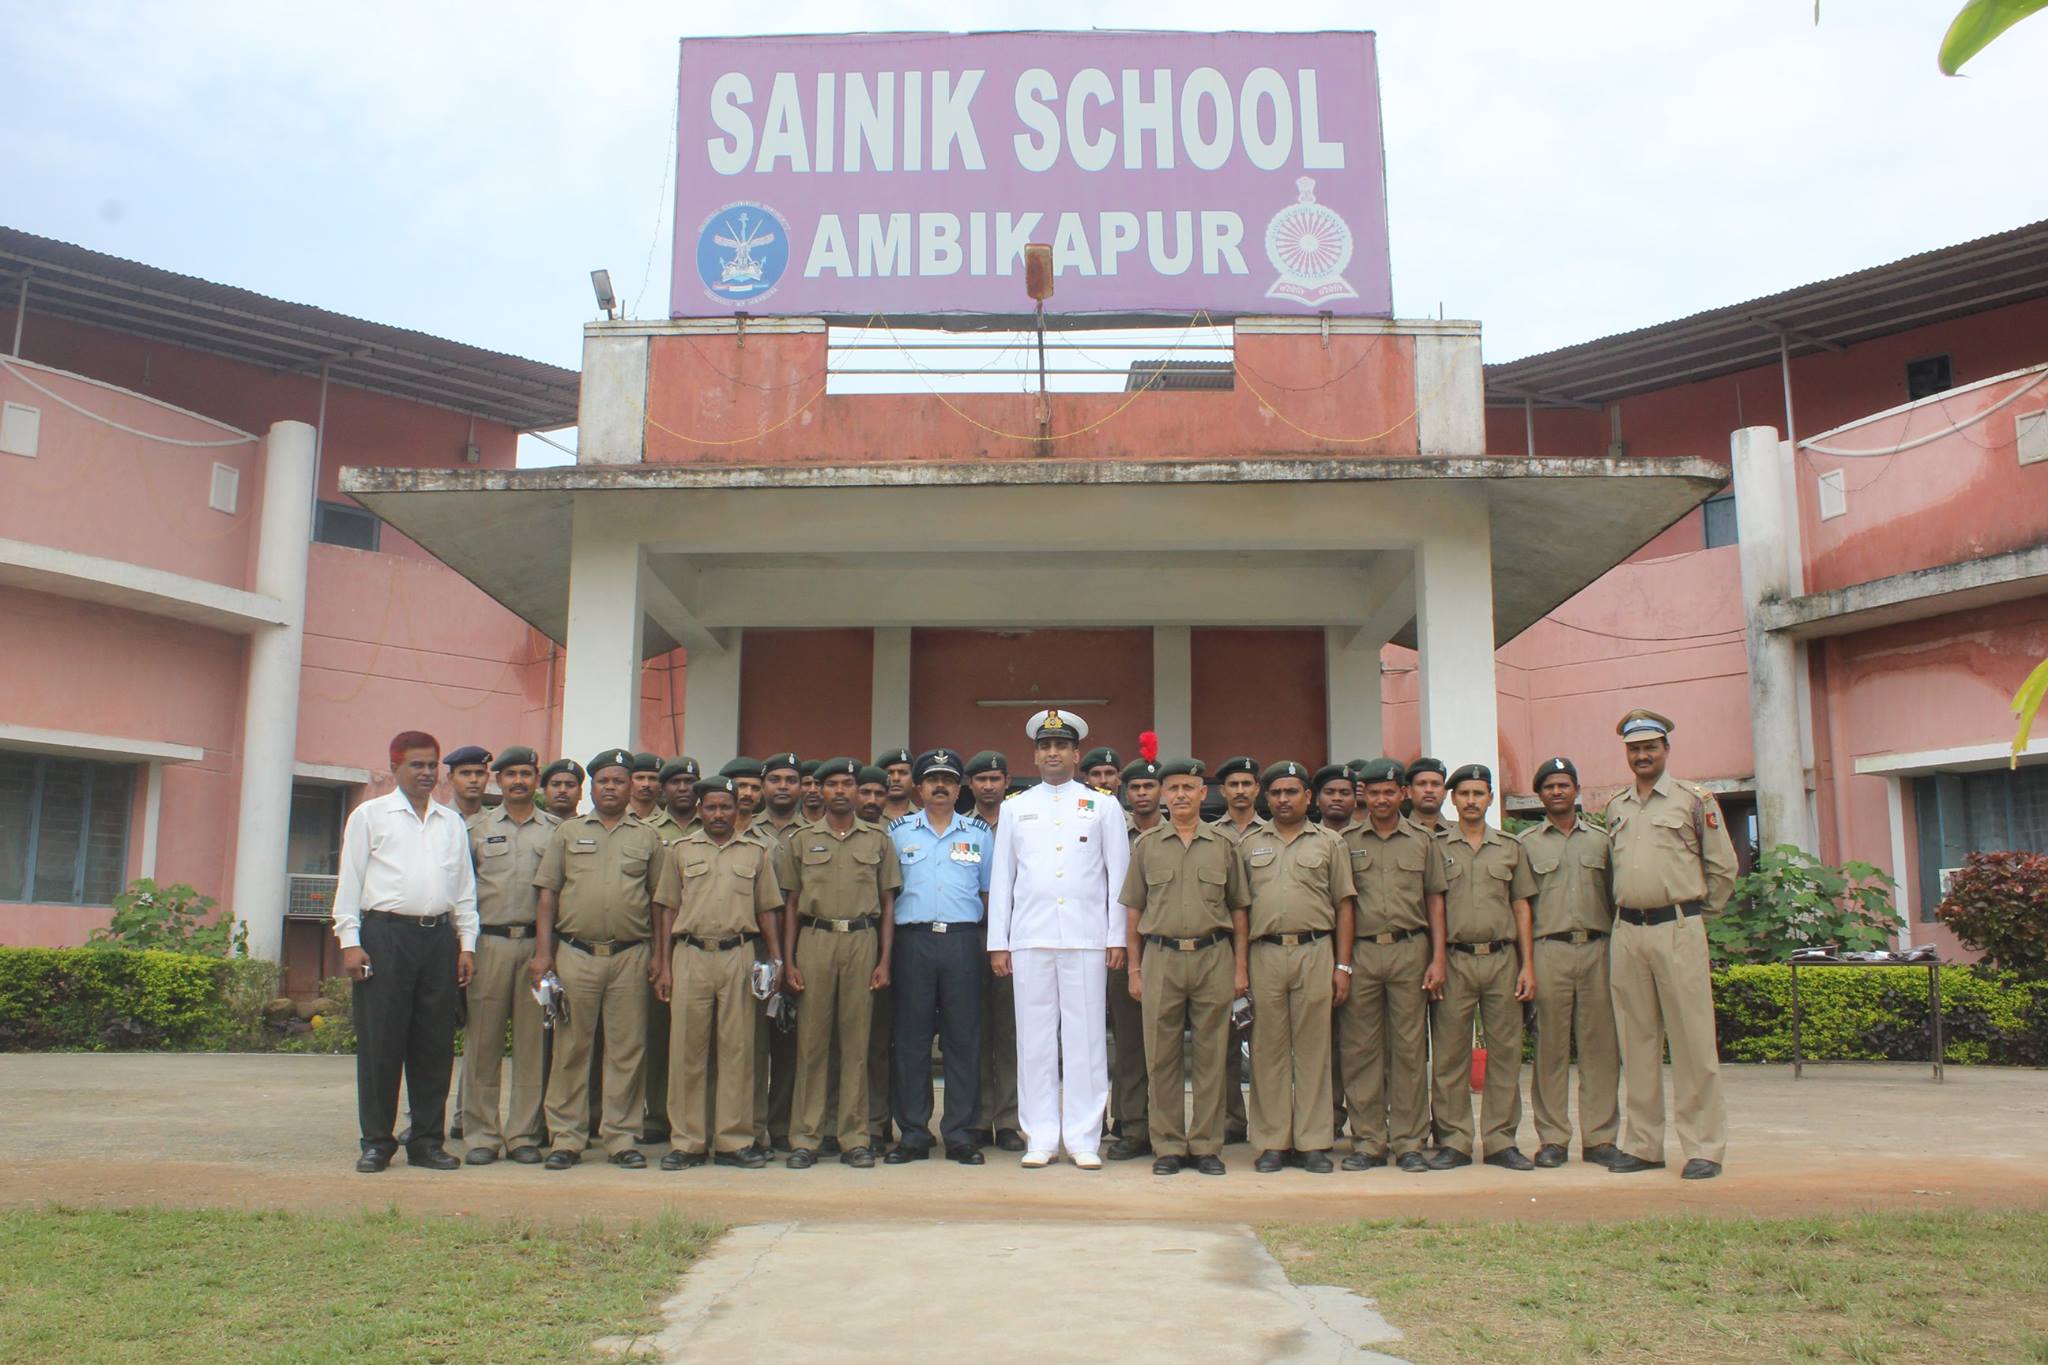 Sainik School Ambikapur Education | Schools